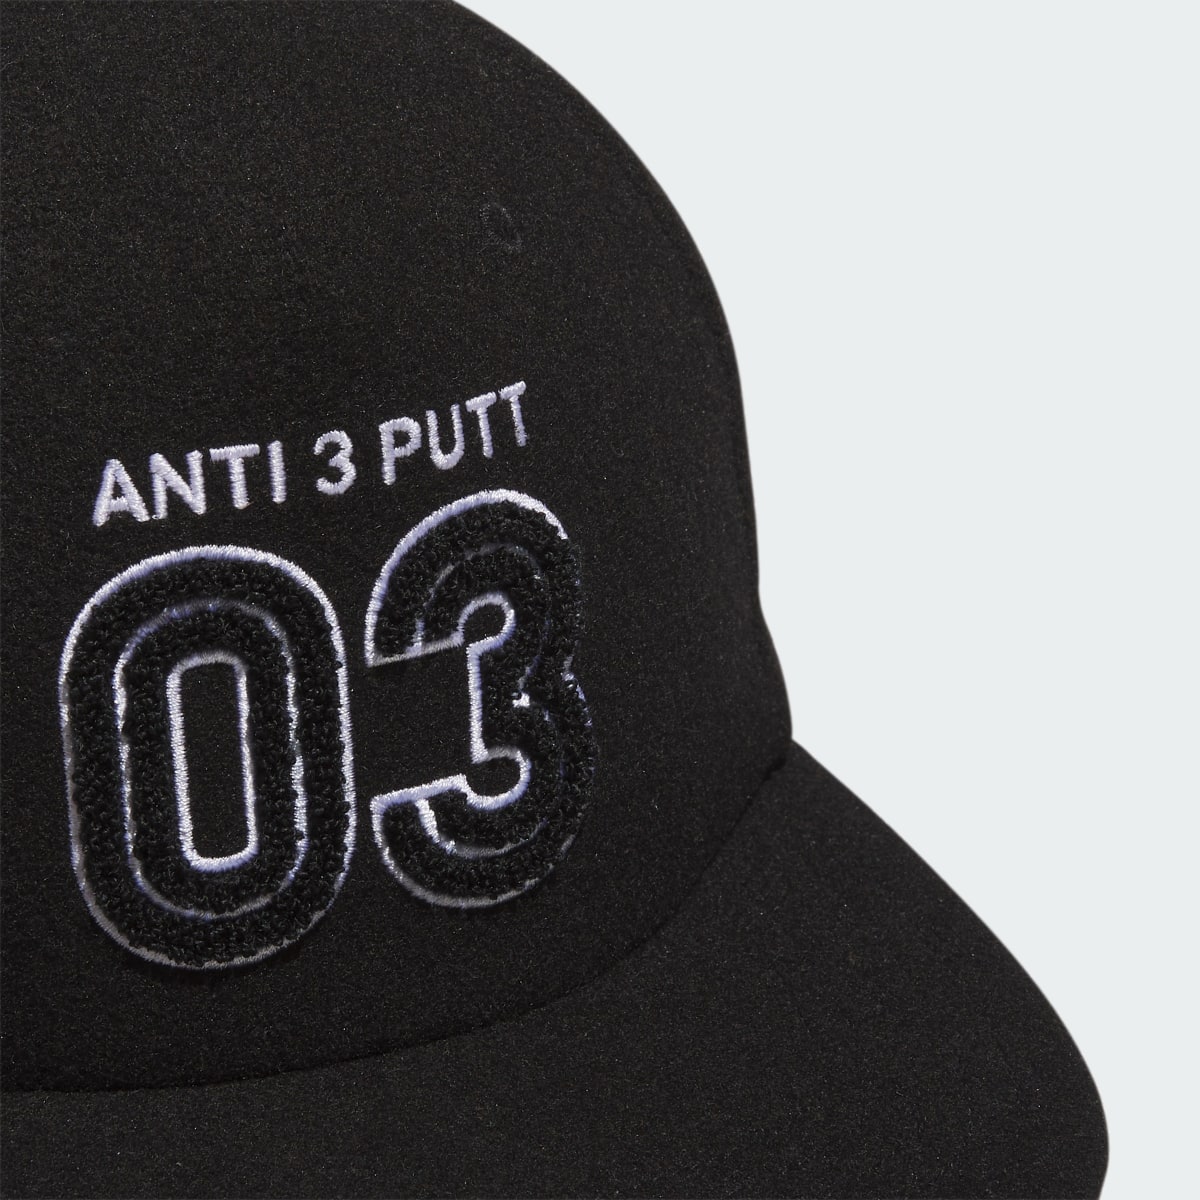 Adidas Cappellino Anti 3 Putt. 4